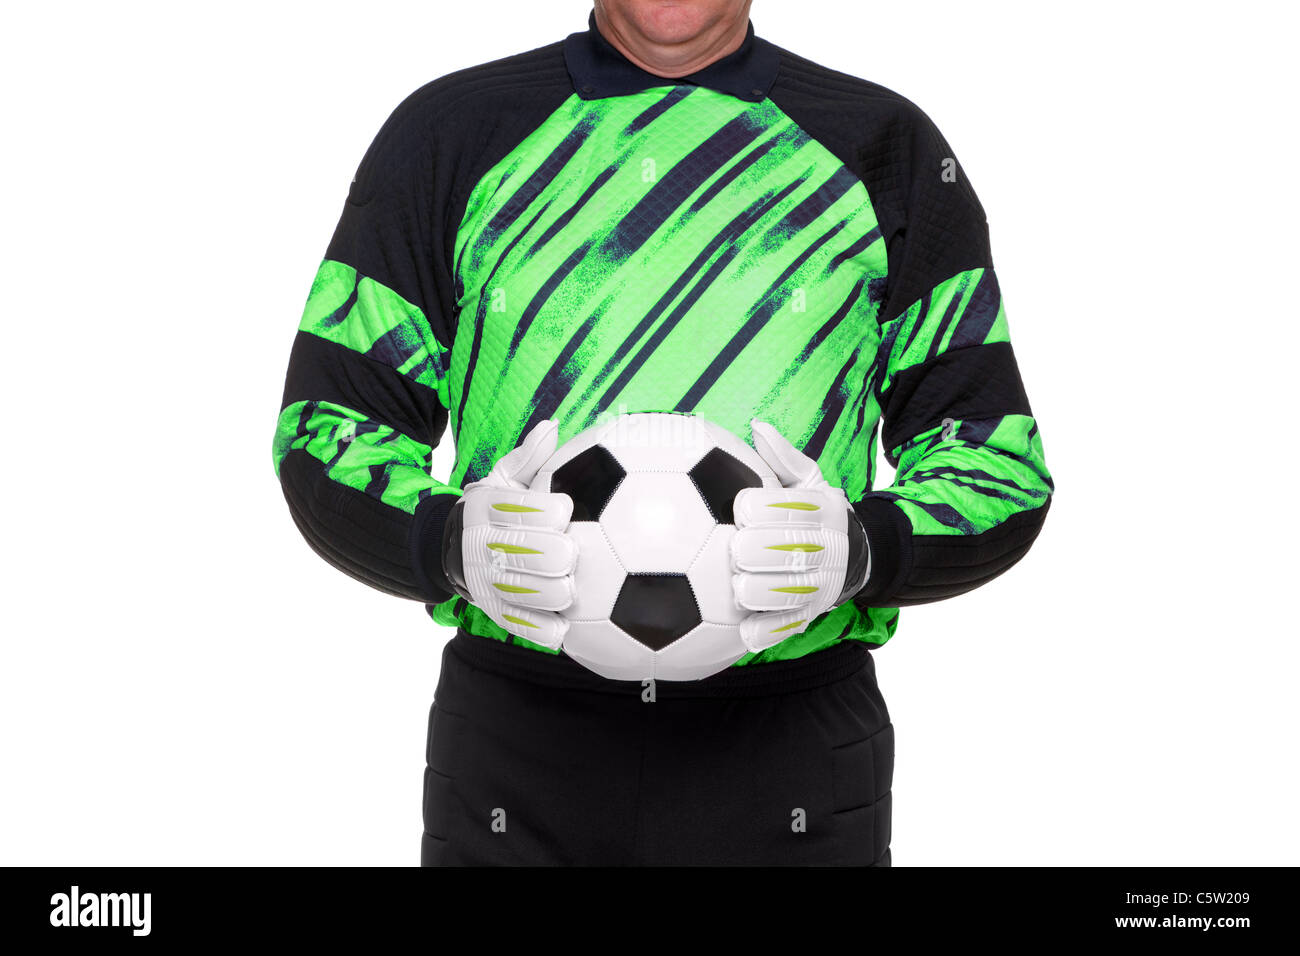 Foto von einem Fußball- oder Fußball Torwart Handschuhe trägt und hält einen Ball, isoliert auf einem weißen Hintergrund. Stockfoto